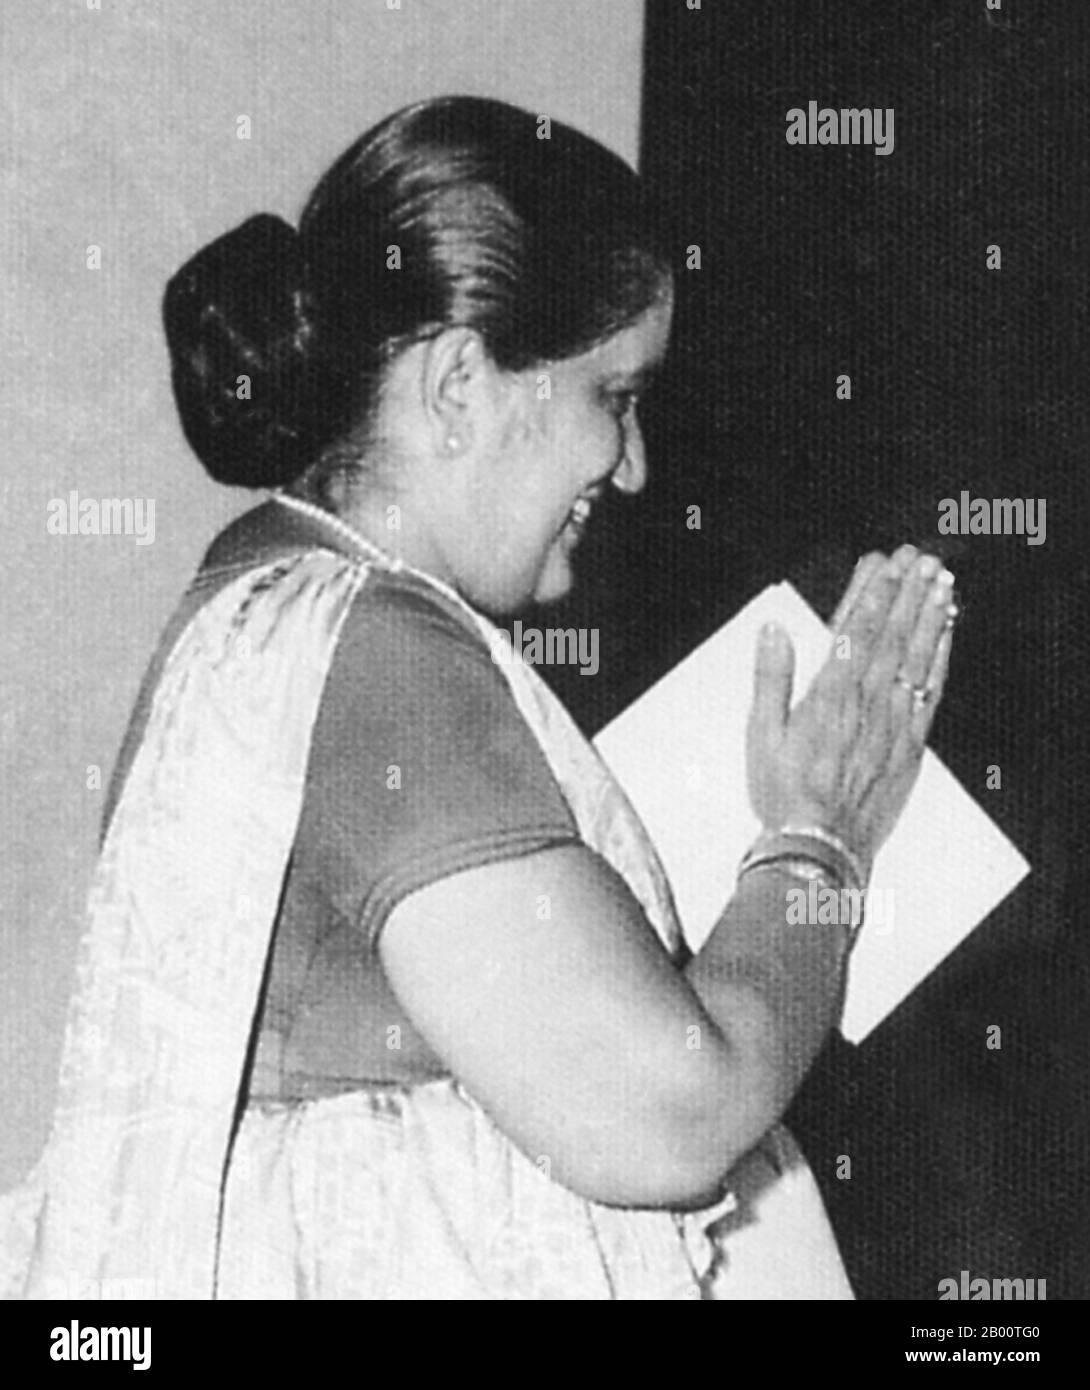 Sri Lanka: Sirimavo Ratwatte Dias Bandaranaike (1916-2000), c. 1980. Sirimavo Ratwatte Dias Bandaranaike (17. April 1916 – 10. Oktober 2000) war eine srilankische Politikerin und die erste weibliche Regierungschef der Welt. Sie war drei Mal Premierminister von Ceylon und Sri Lanka, 1960-65, 1970-77 und 1994-2000, und war eine langjährige Führerin der Sri Lanka Freedom Party. Bandaranaike war die Witwe eines früheren srilankischen Ministerpräsidenten, Solomon Bandaranaike, und die Mutter von Sri Lankas dritter Präsidentin, Chandrika Kumaratunga. Stockfoto